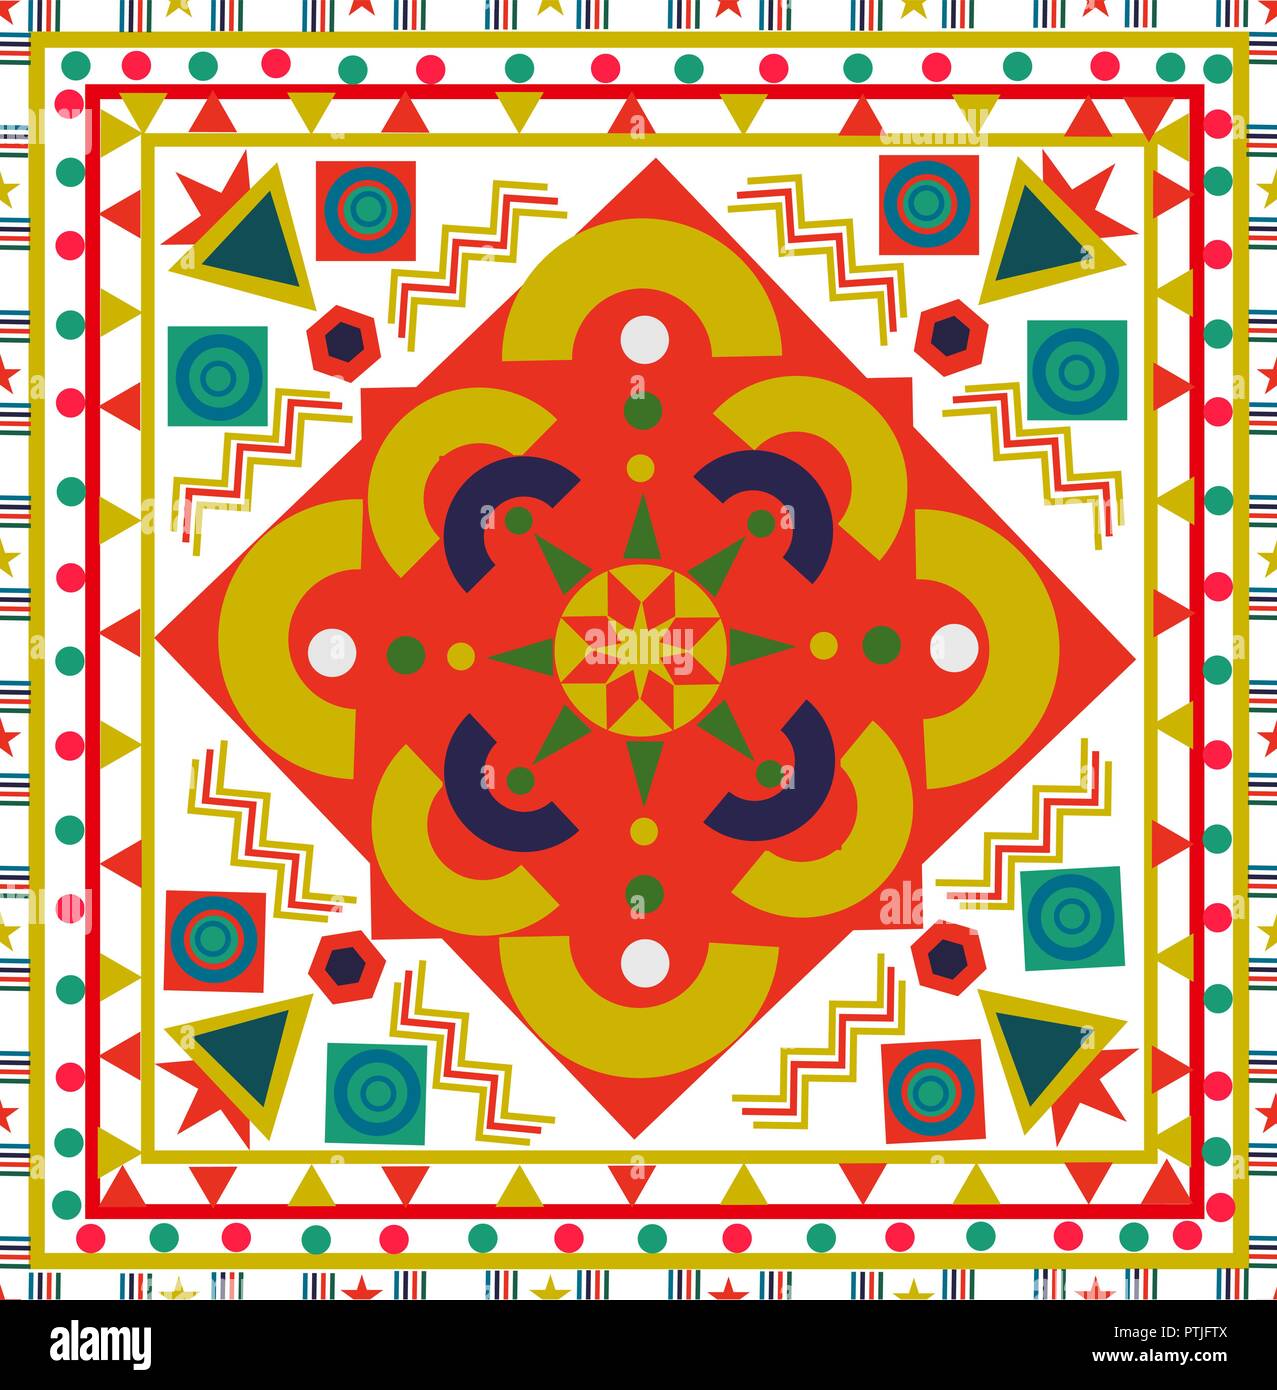 Nahtlose Muster mit bunten Flickenteppich. Retro tribal böhmische Volksmusik multicolor Blumenschmuck. Nützlich für keramische Fliesen, Tapeten, Linoleum, texti Stock Vektor